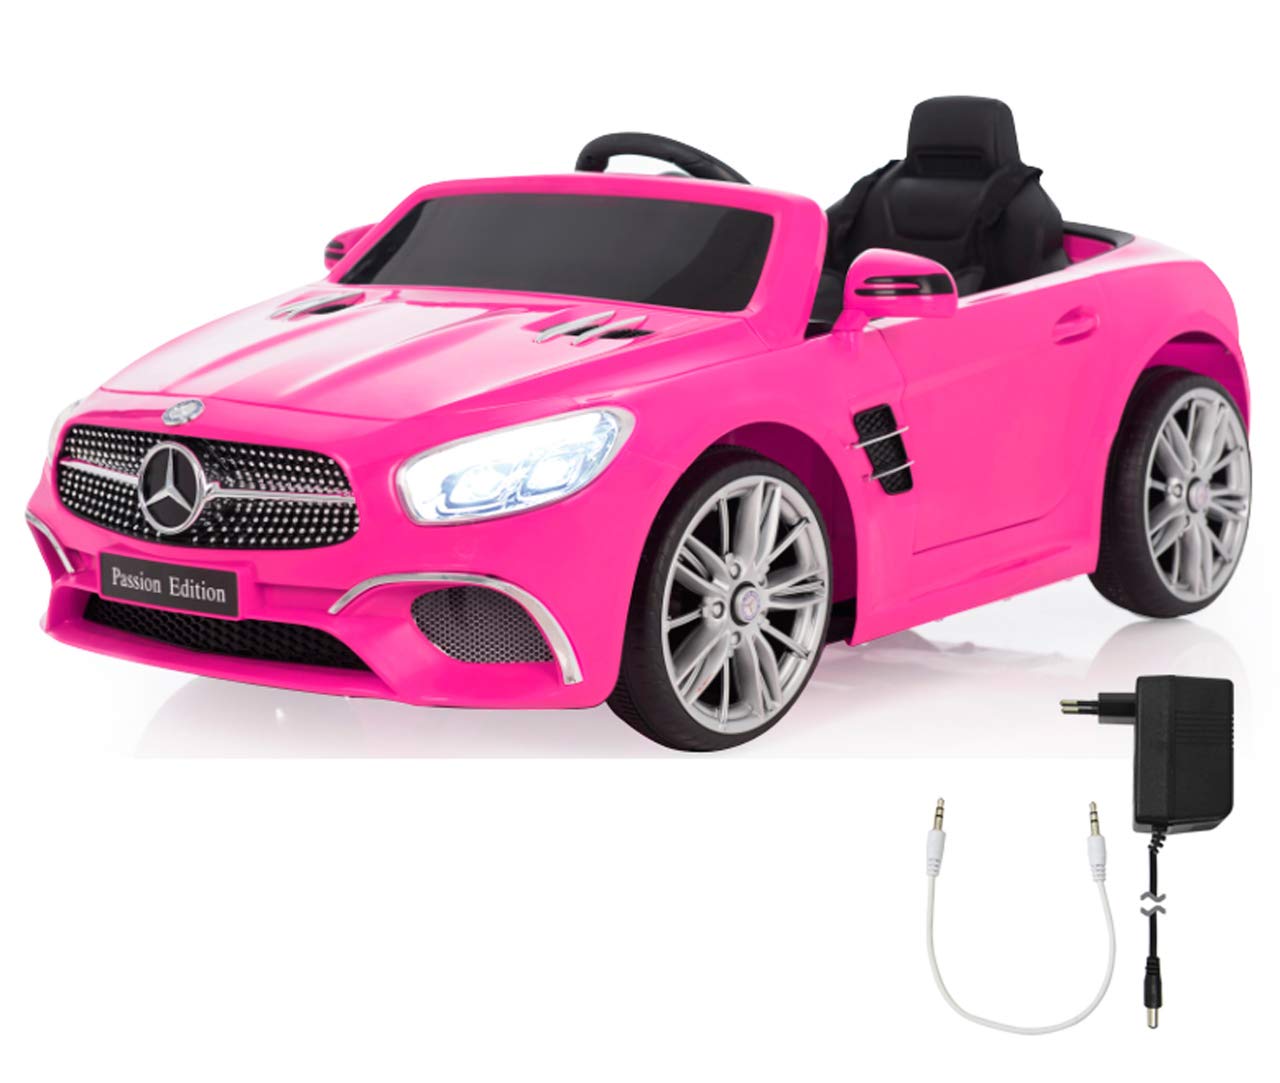 JAMARA 460440 - Ride-on Mercedes-Benz SL 400 12V - 2 Leistungsstarke Antriebsmotoren und Akku für Lange Fahrzeit, Micro-SD-Slot, AUX-/USB-Anschluss, LED-Scheinwerfer, Ultra-Grip Gummiring, pink